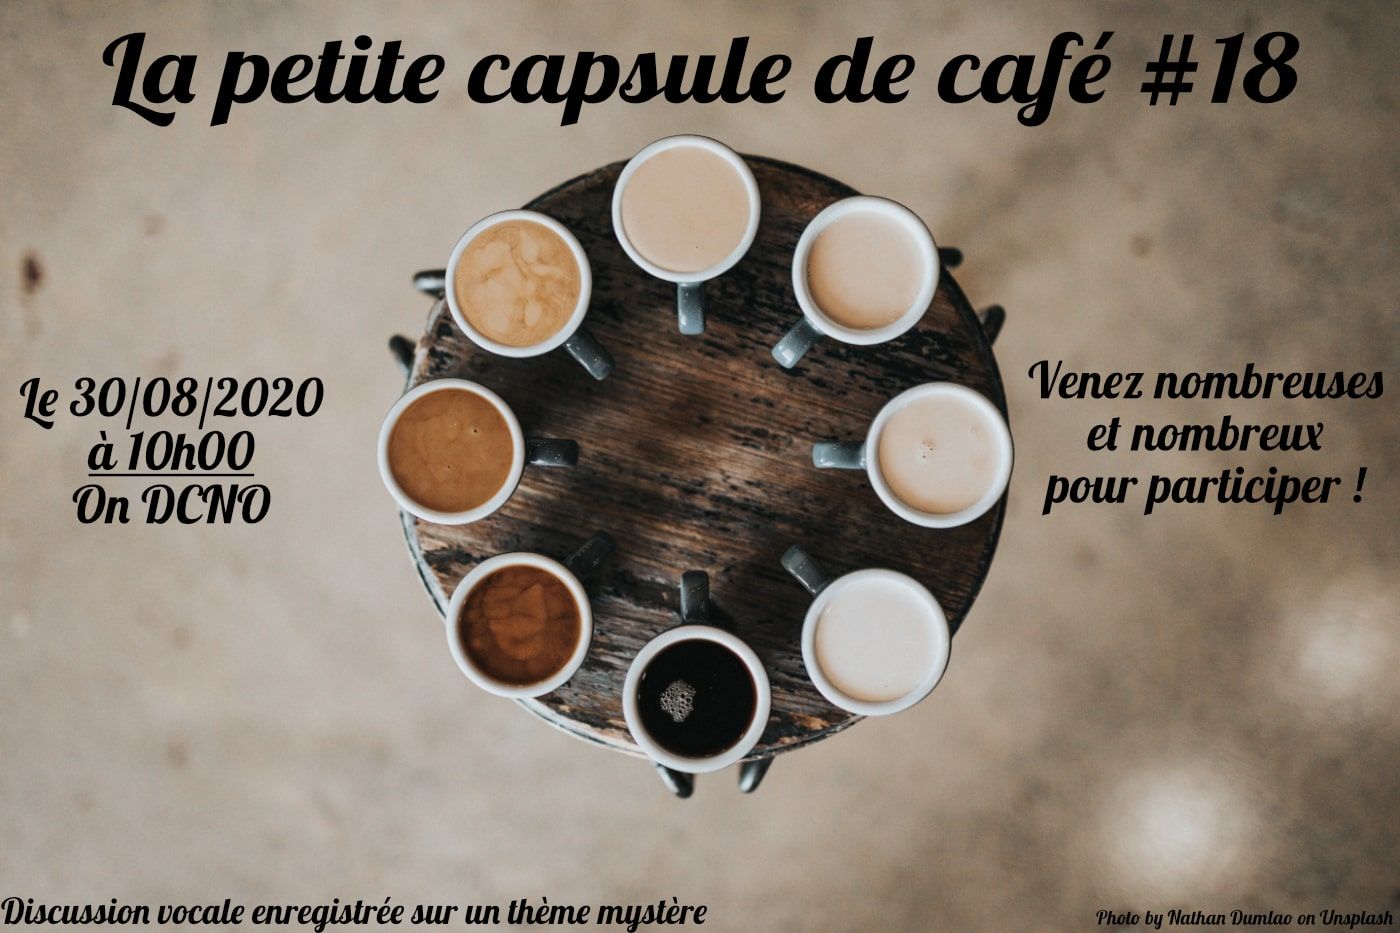 La Petite Capsule de Café #18 : Le Compte Rendu de Partie (CR)